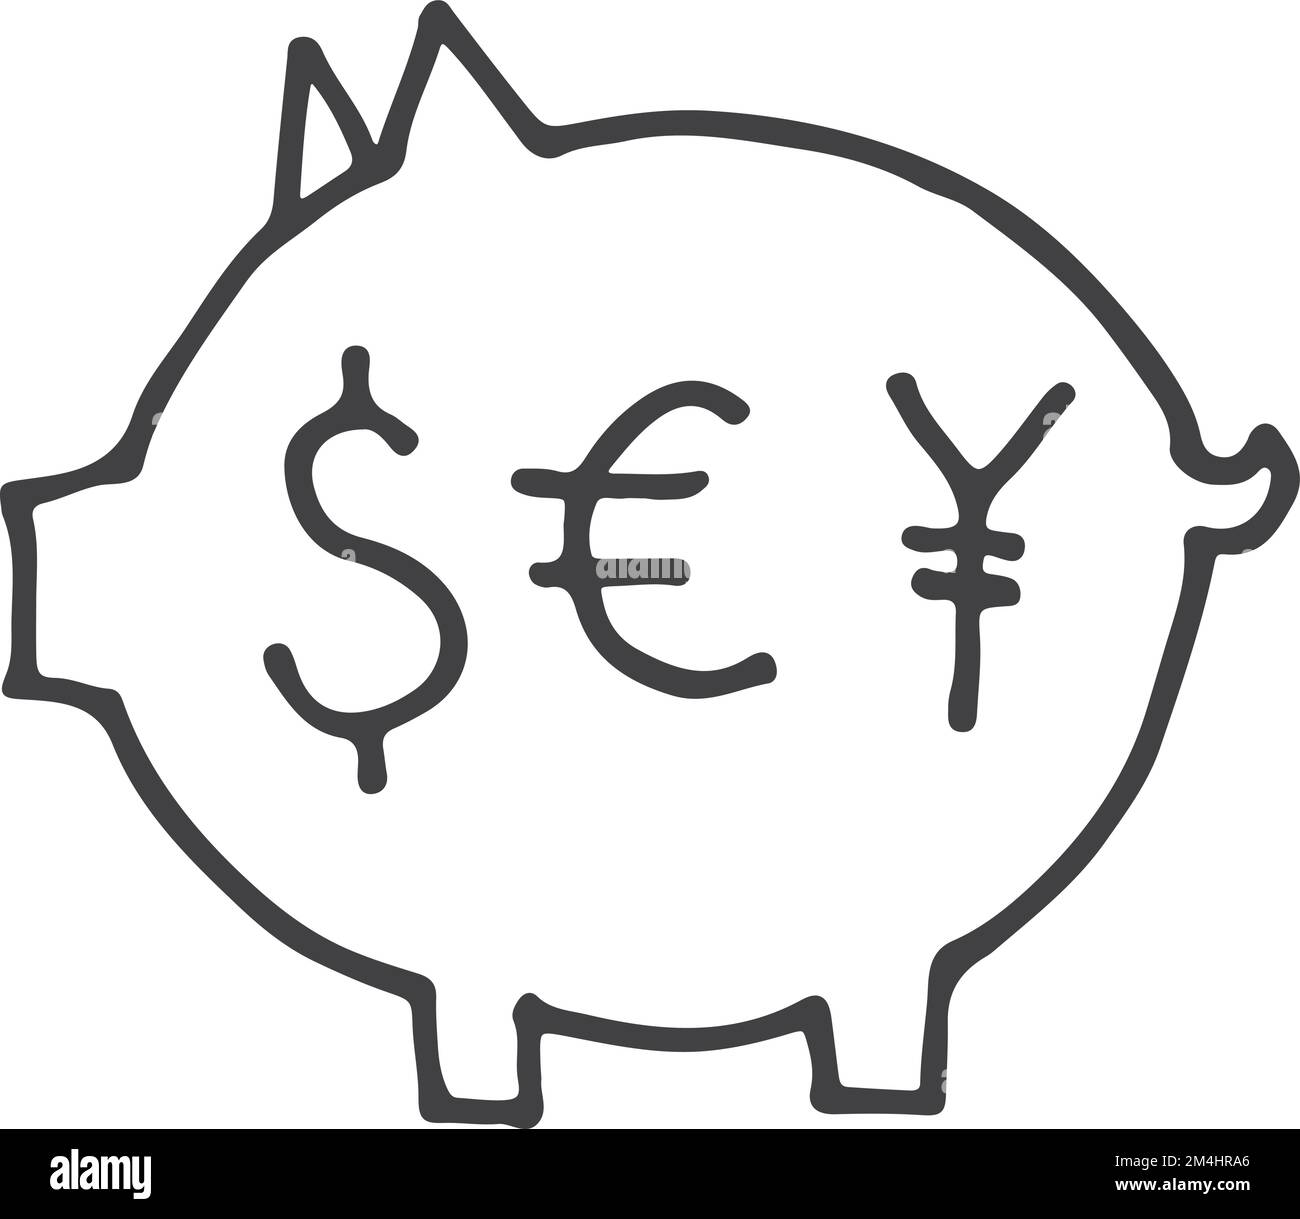 Geld-Schwein-Kritzelsymbol. Skizze der finanziellen Einsparungen Stock Vektor